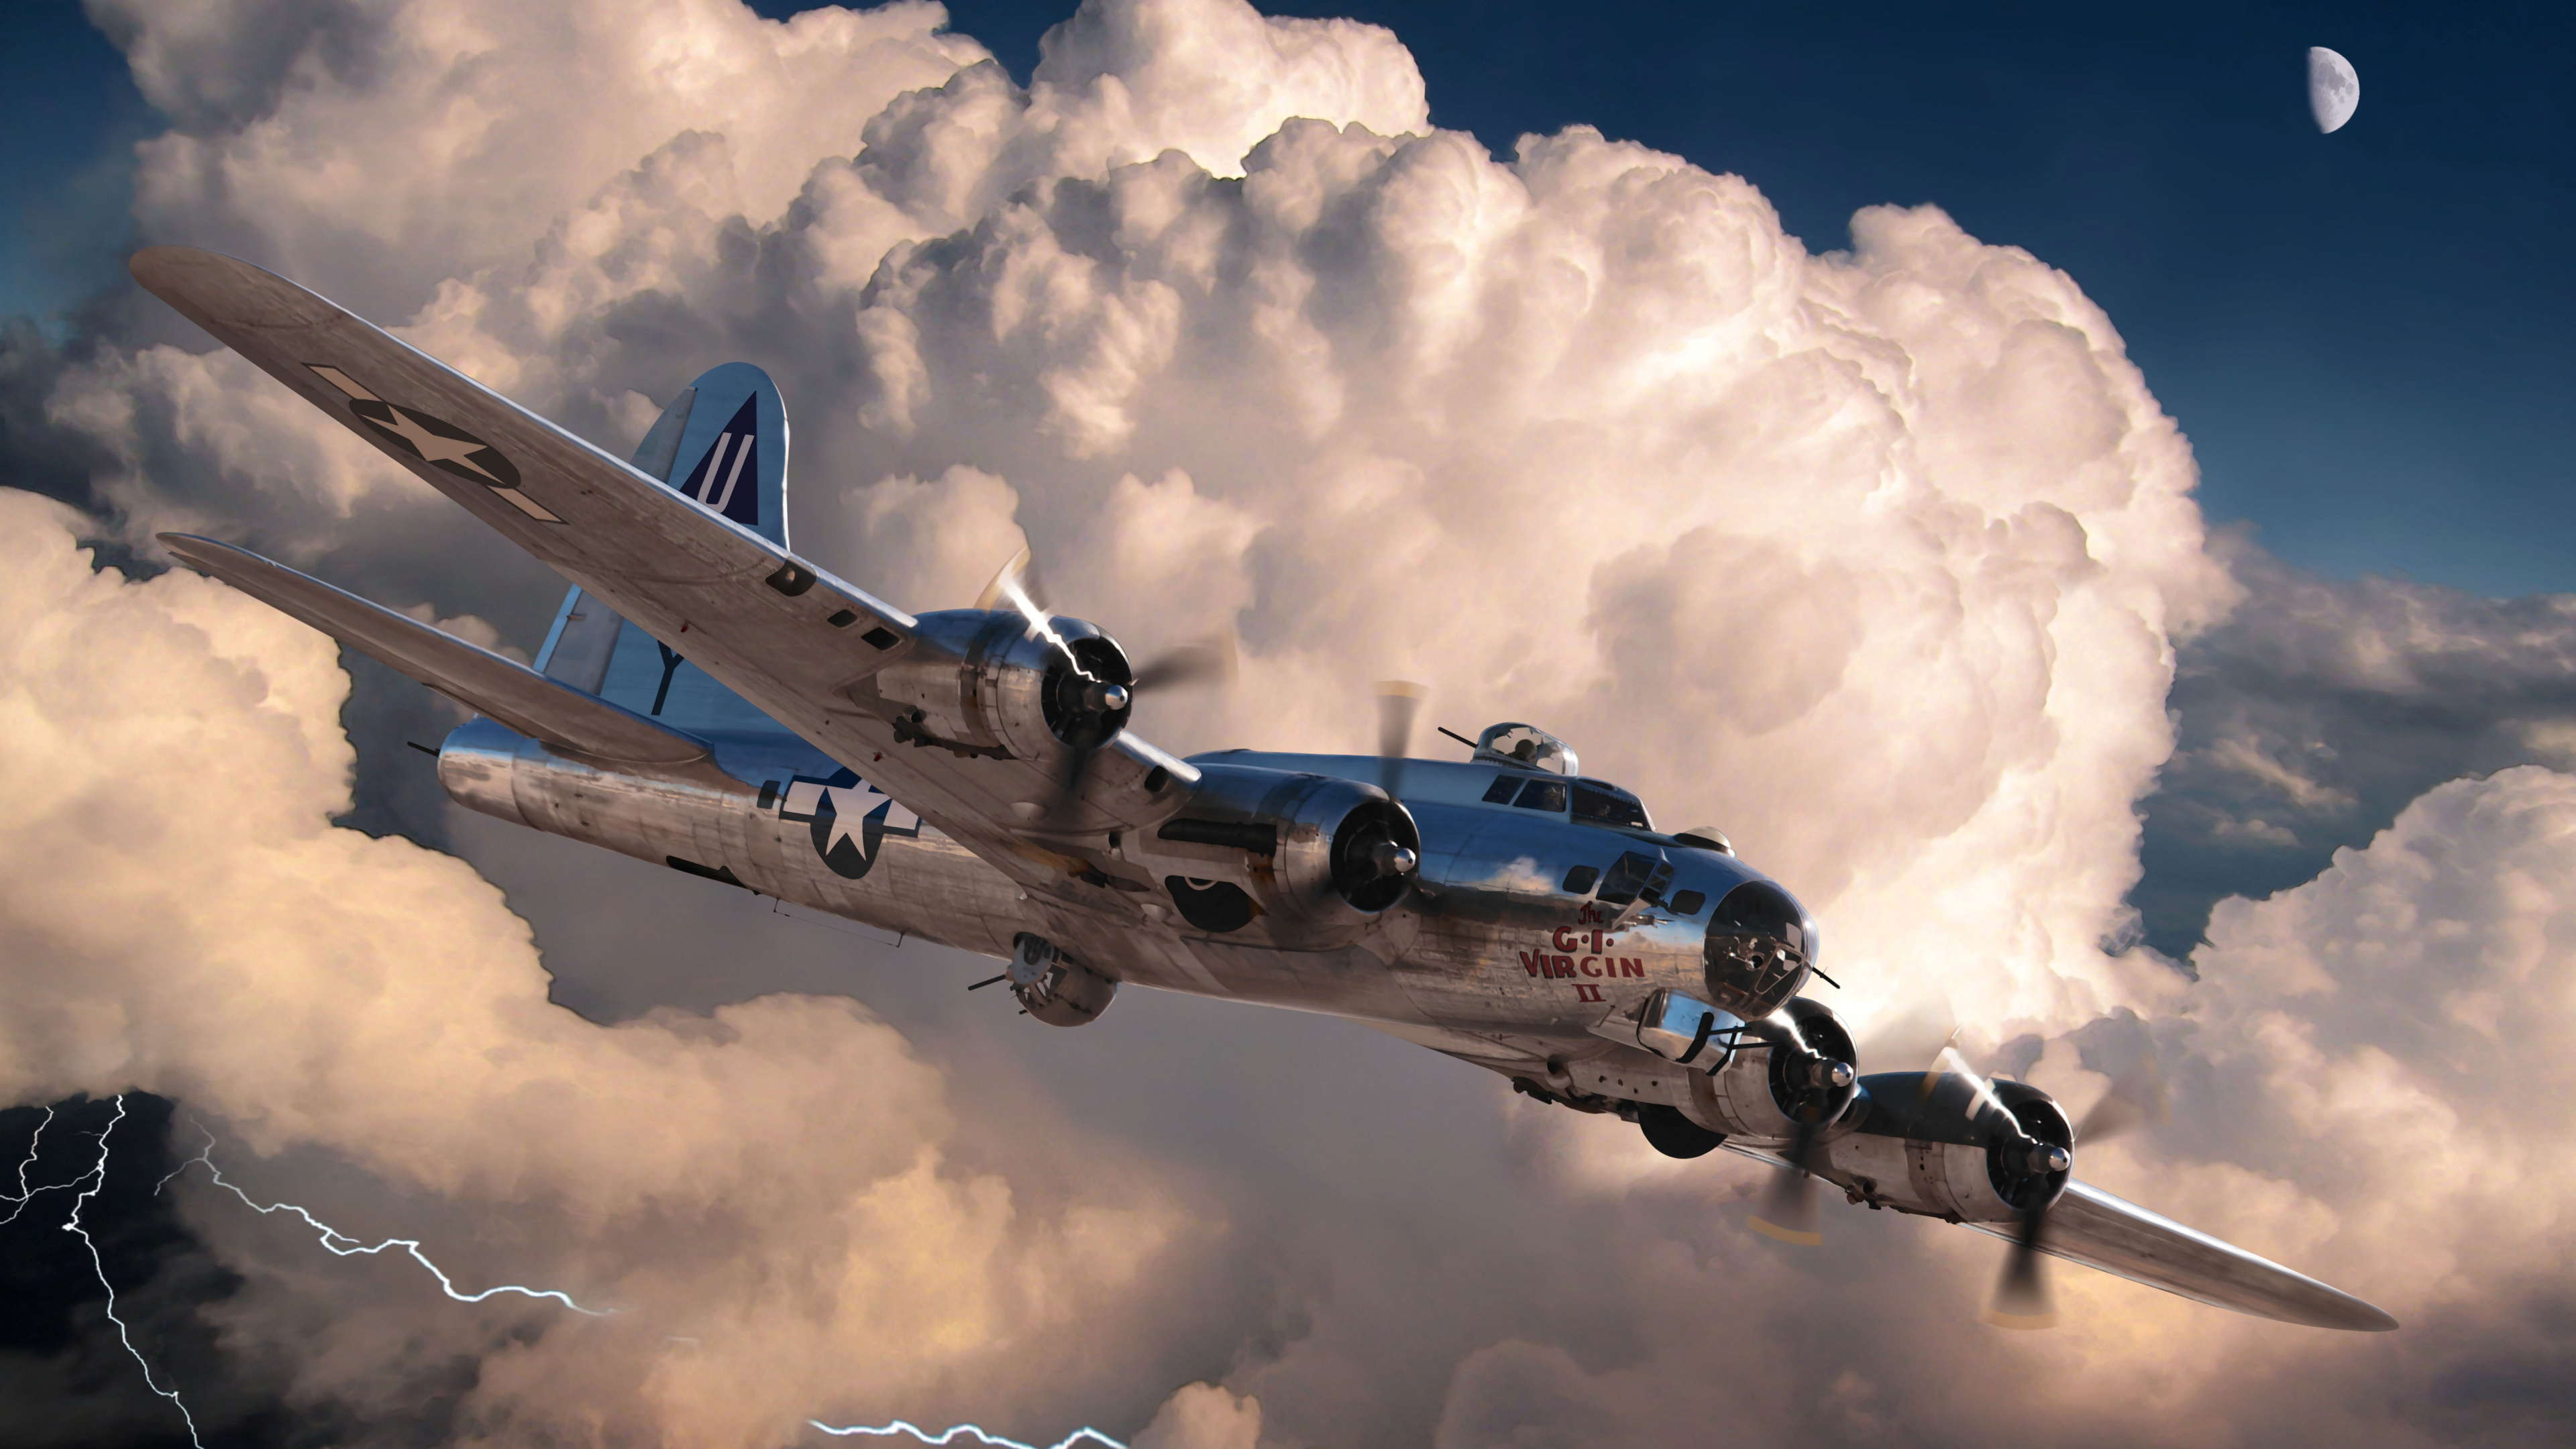 第二次世界大战, 世界大战, 波音公司b-17飞行堡垒, 波音公司B-29超级空中堡垒, 航空 壁纸 3840x2160 允许